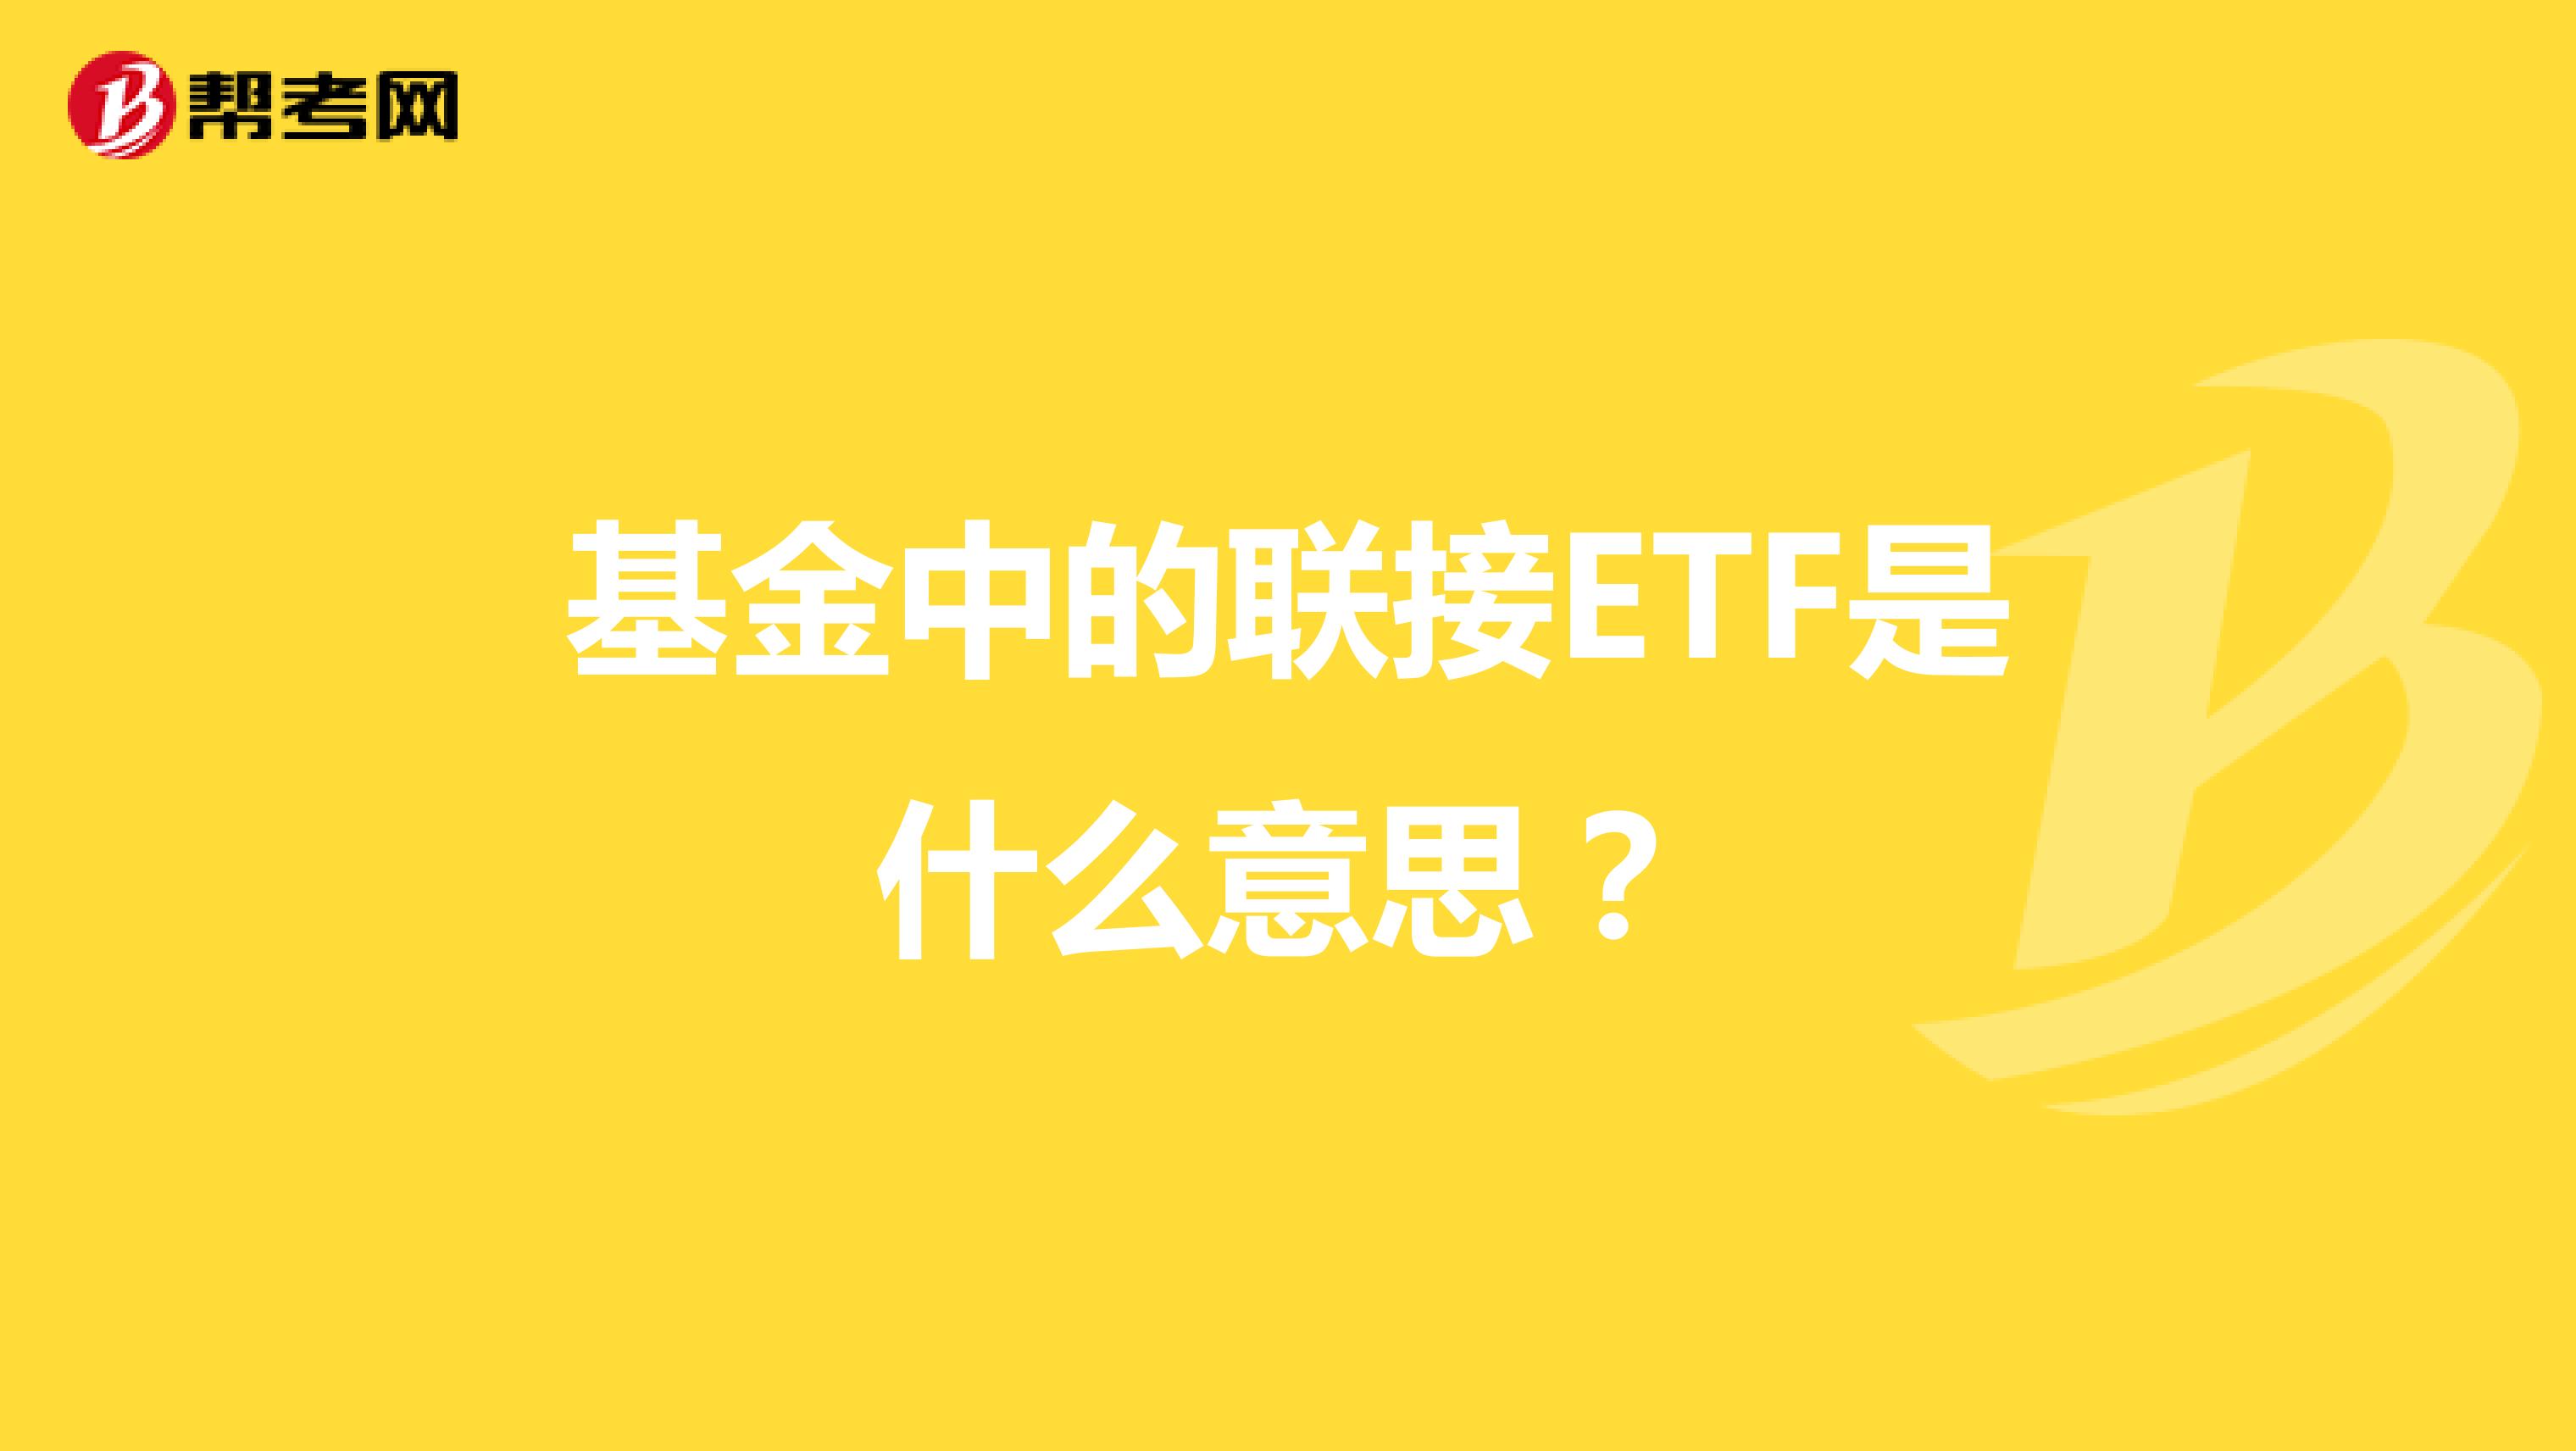 基金中的联接ETF是什么意思？